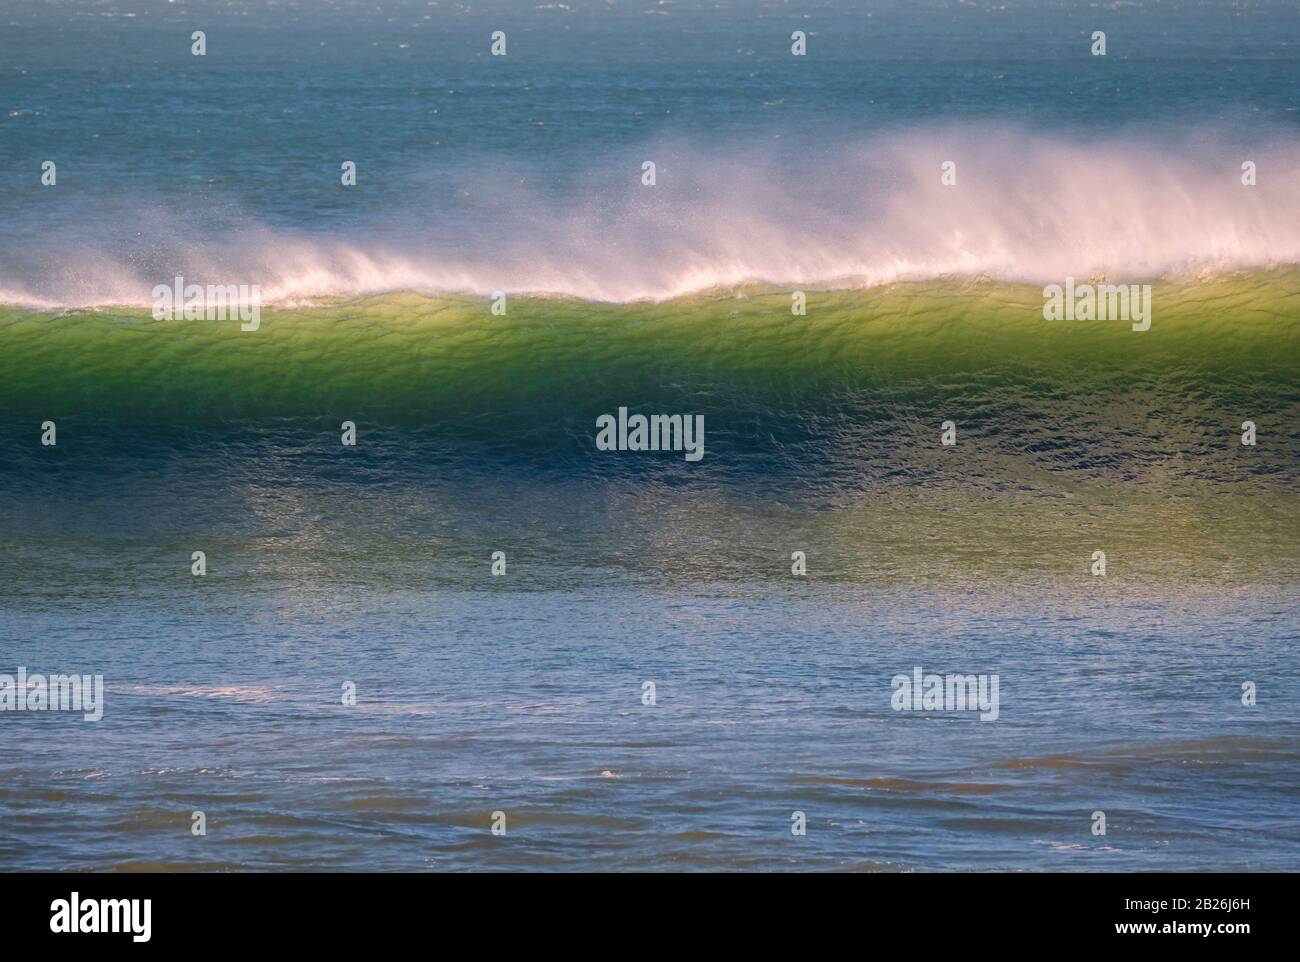 Wunderbare Wellen Surfen in diesem Urlaub und Surfziel Woolacombe Bay, Strand, Urlaubsziel, North Devon, Süd-West Stockfoto